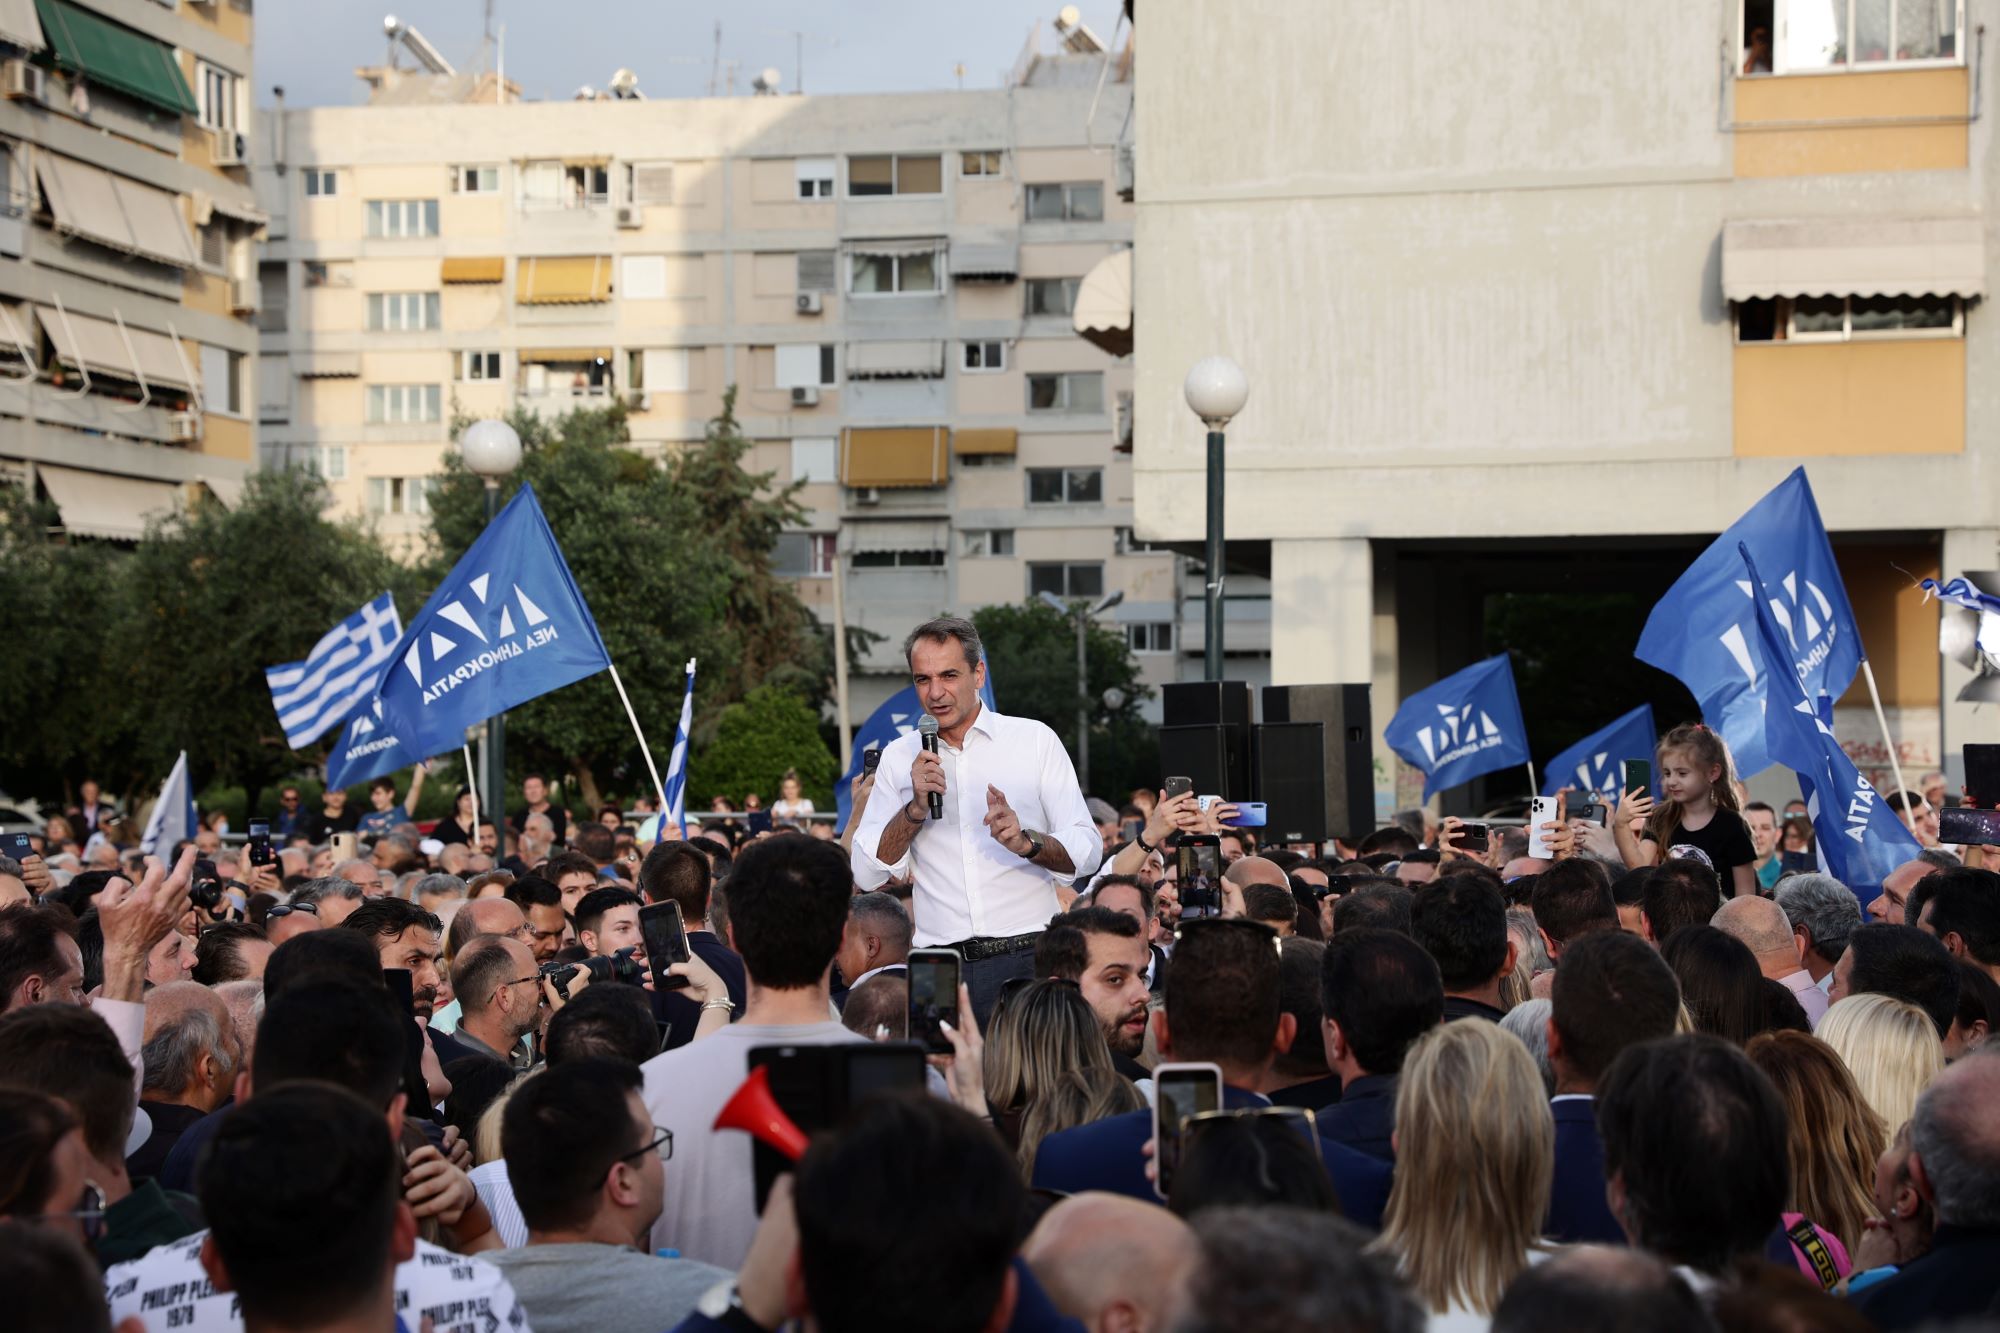 Μητσοτάκης: Η χώρα χρειάζεται σταθερή κυβέρνηση – Θα είμαι πρωθυπουργός όλων των Ελλήνων